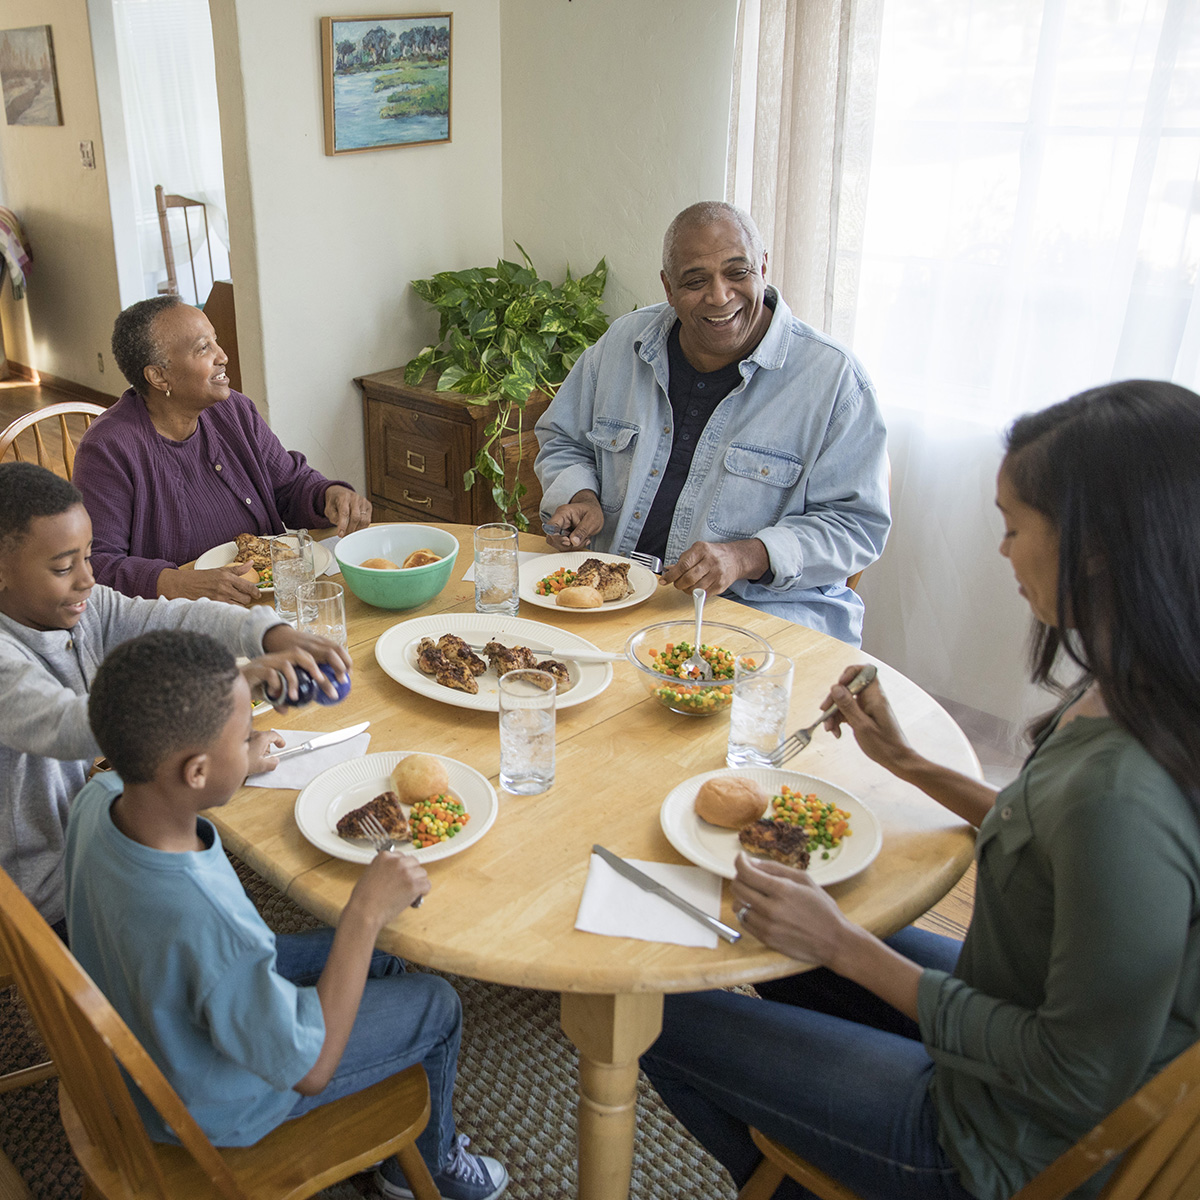 Familia reunida alrededor de la mesa disfrutando una cena agradable.